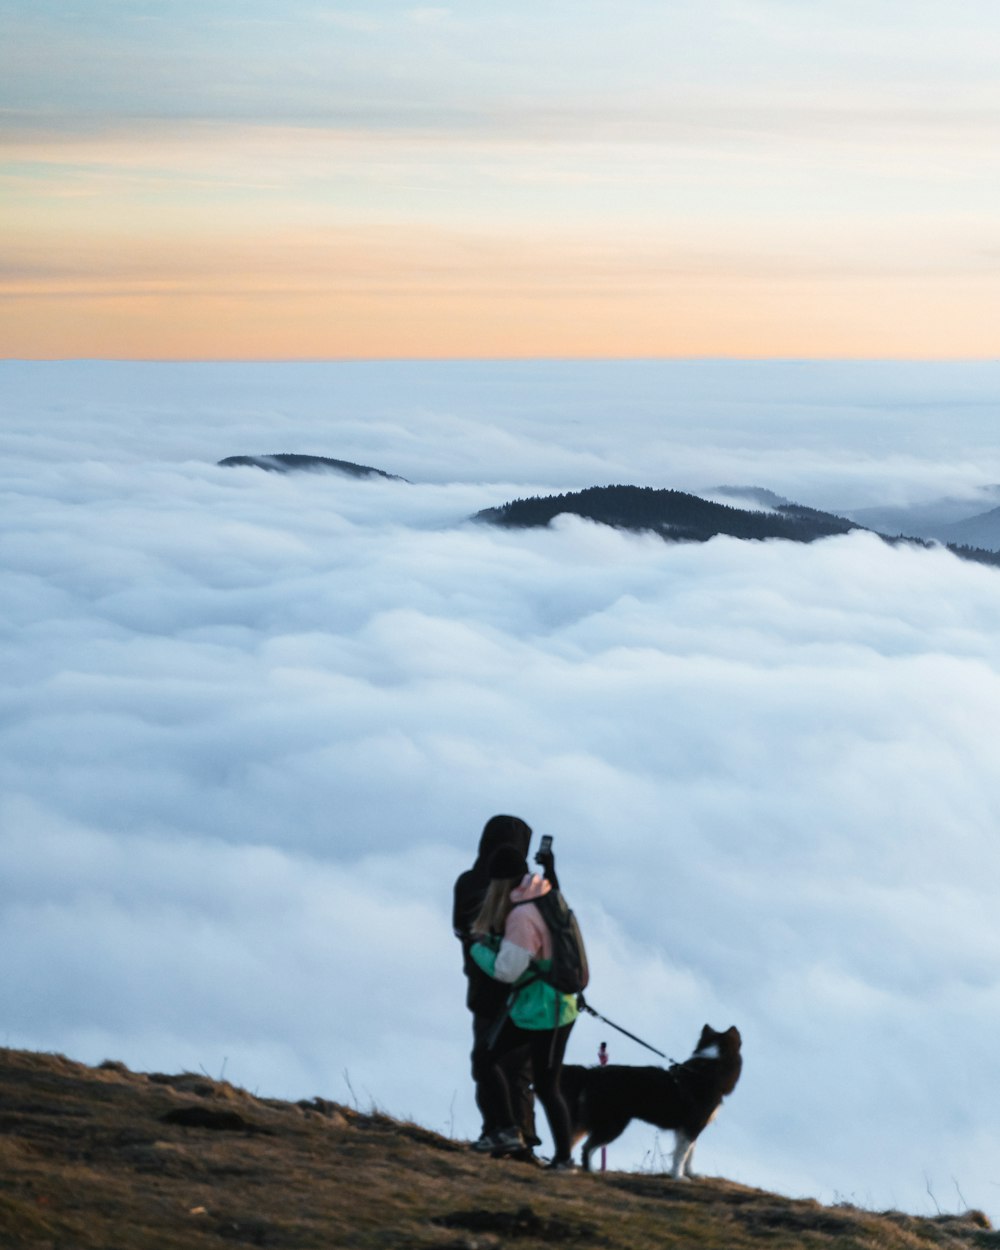 Un homme et une femme avec un chien sur une colline au-dessus des nuages